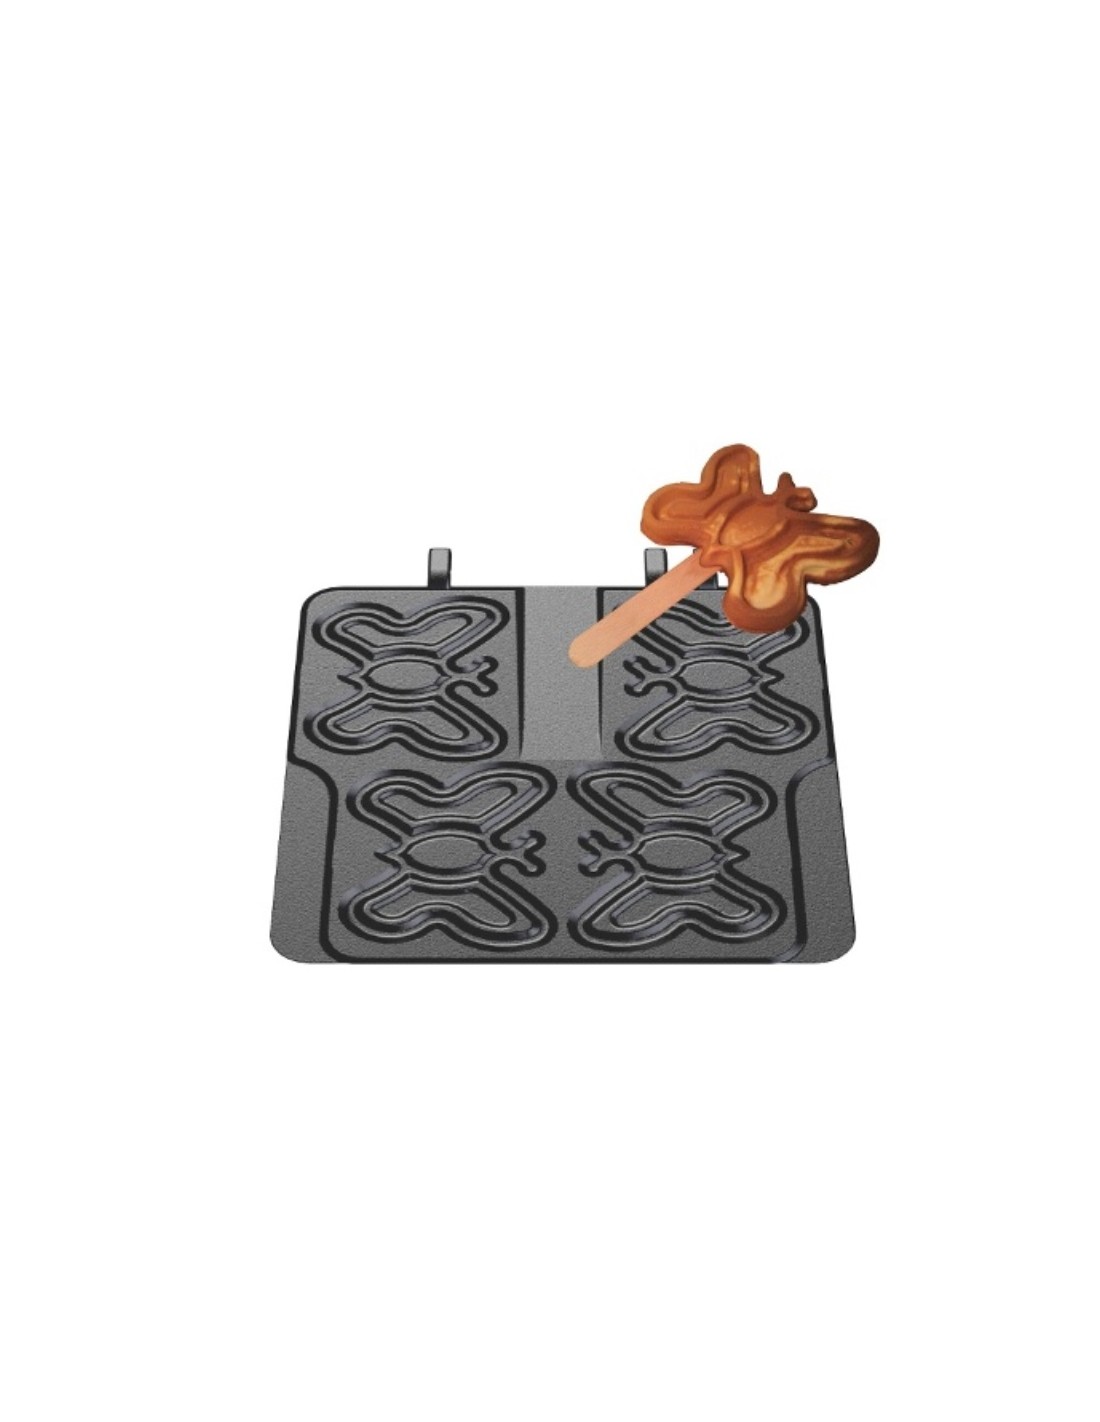 Interchangeable waffel plate. Shape: 4 butterfly shaped waffles 10.6 x 13.5 x 2.4 cm - On stem - In cast iron